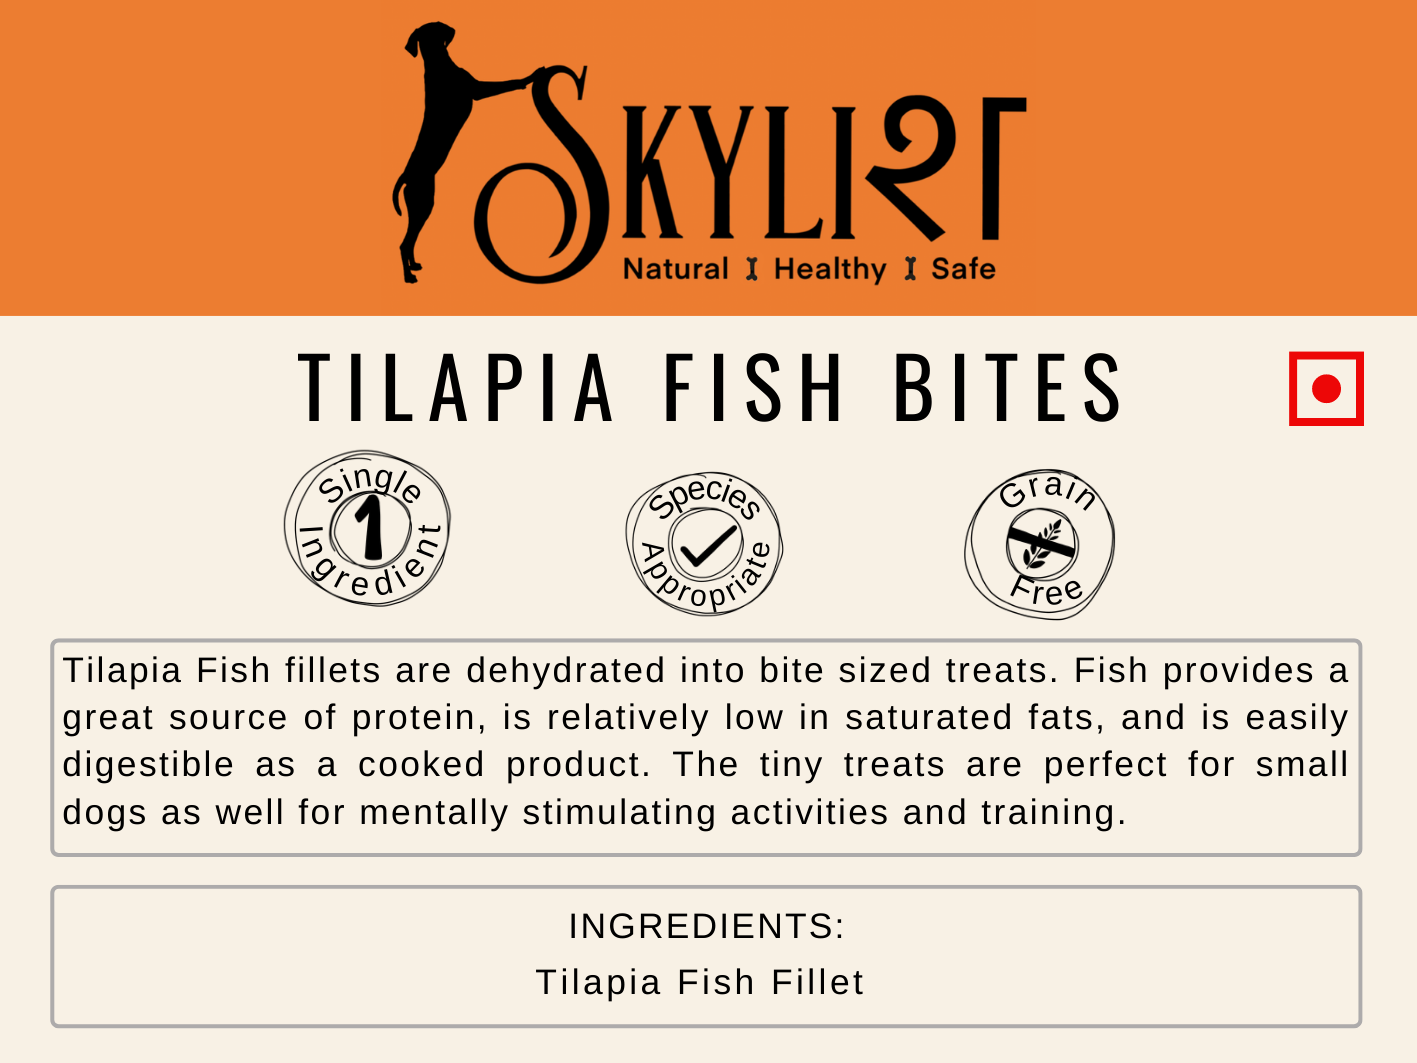 Skylish Tilapia Fish